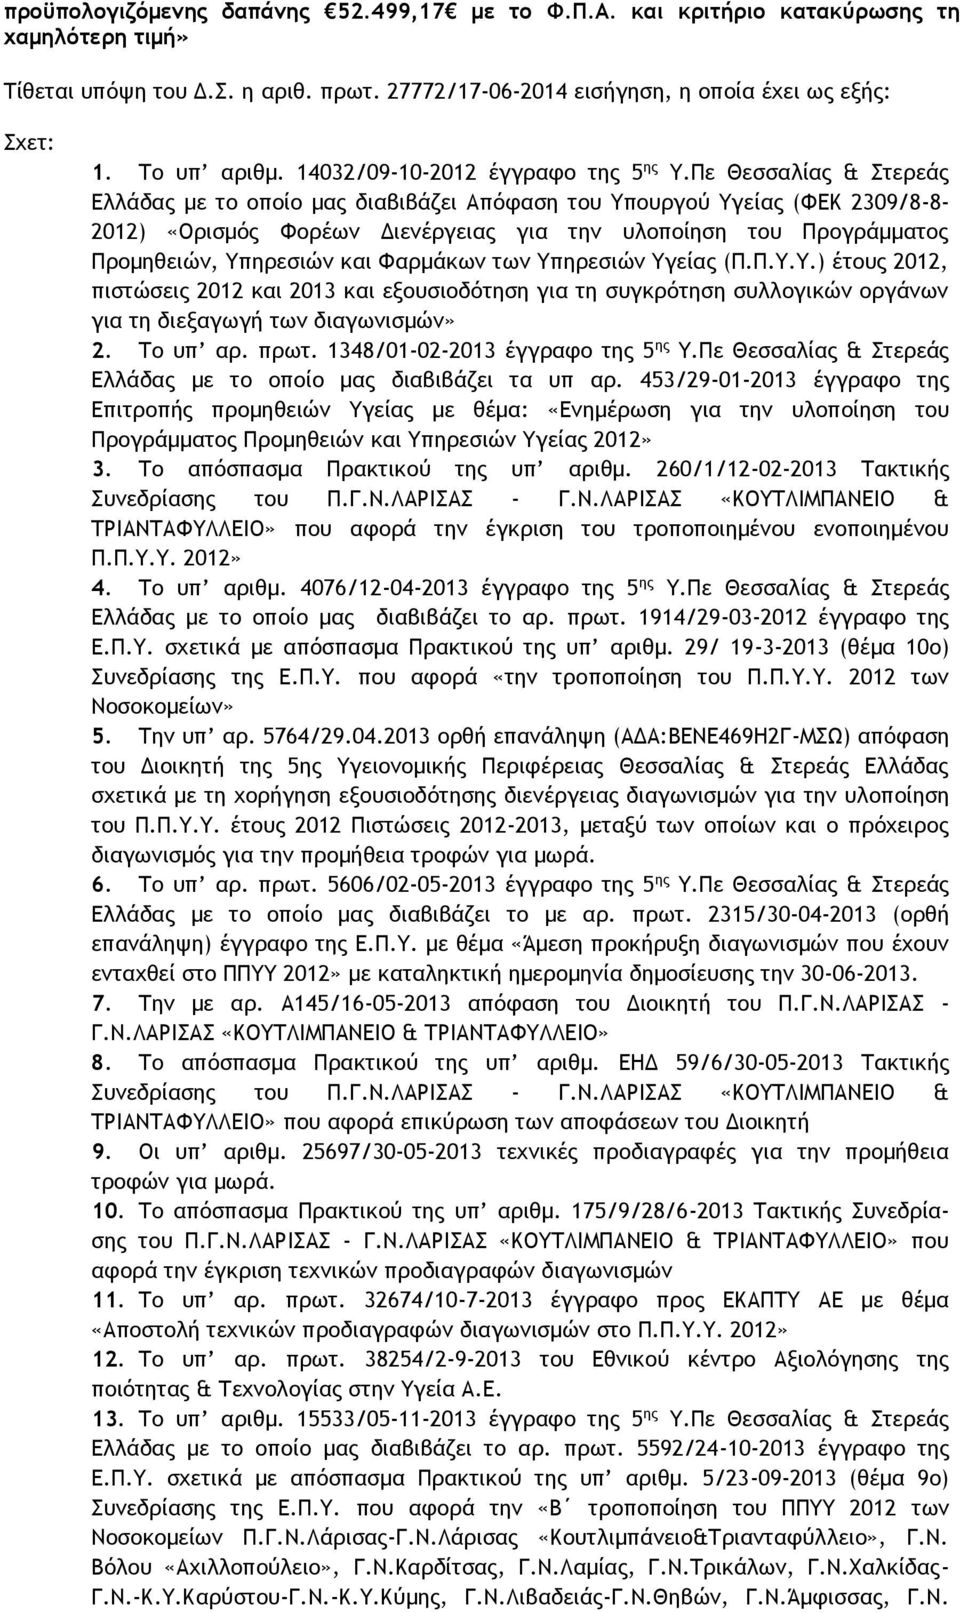 Πε Θεσσαλίας & Στερεάς Ελλάδας με το οποίο μας διαβιβάζει Απόφαση του Υπουργού Υγείας (ΦΕΚ 2309/8-8- 2012) «Ορισμός Φορέων Διενέργειας για την υλοποίηση του Προγράμματος Προμηθειών, Υπηρεσιών και